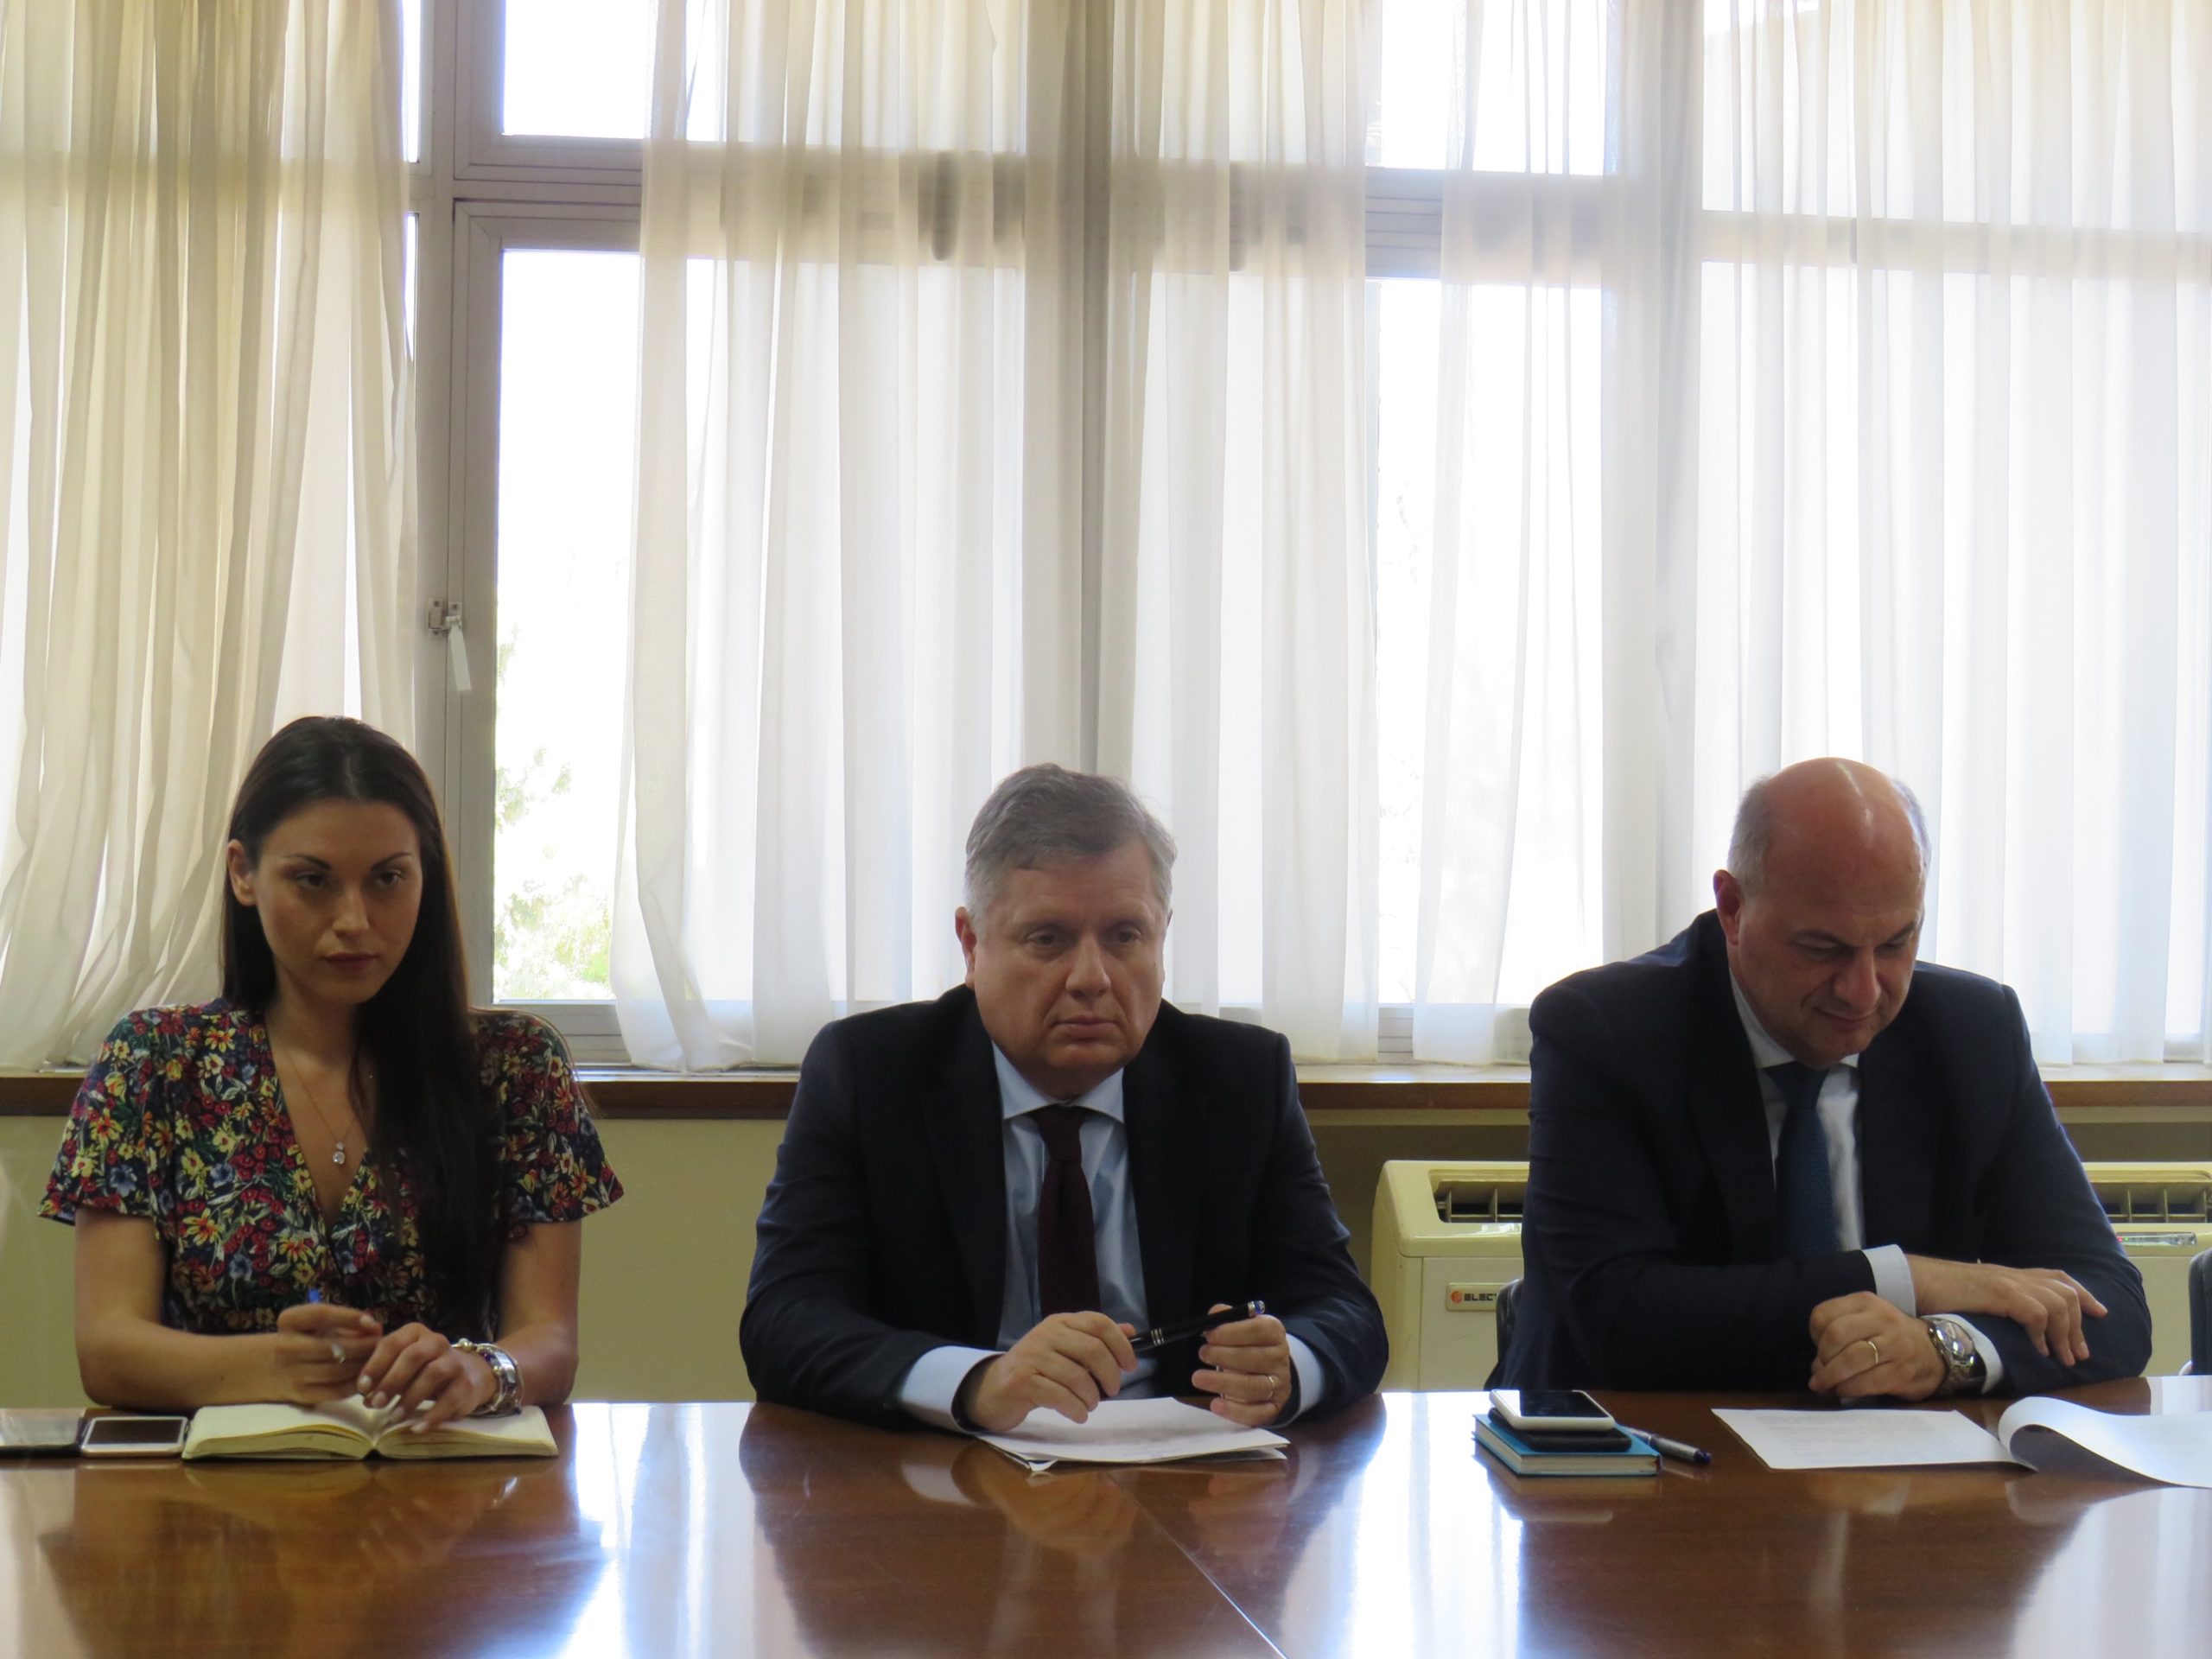 Κ. Τσιάρας: Συμμετείχε στην πρώτη συνεδρίαση της επιτροπής του υπουργείου για αλλαγές στη λειτουργία των Εταιριών Προστασίας Ανηλίκων